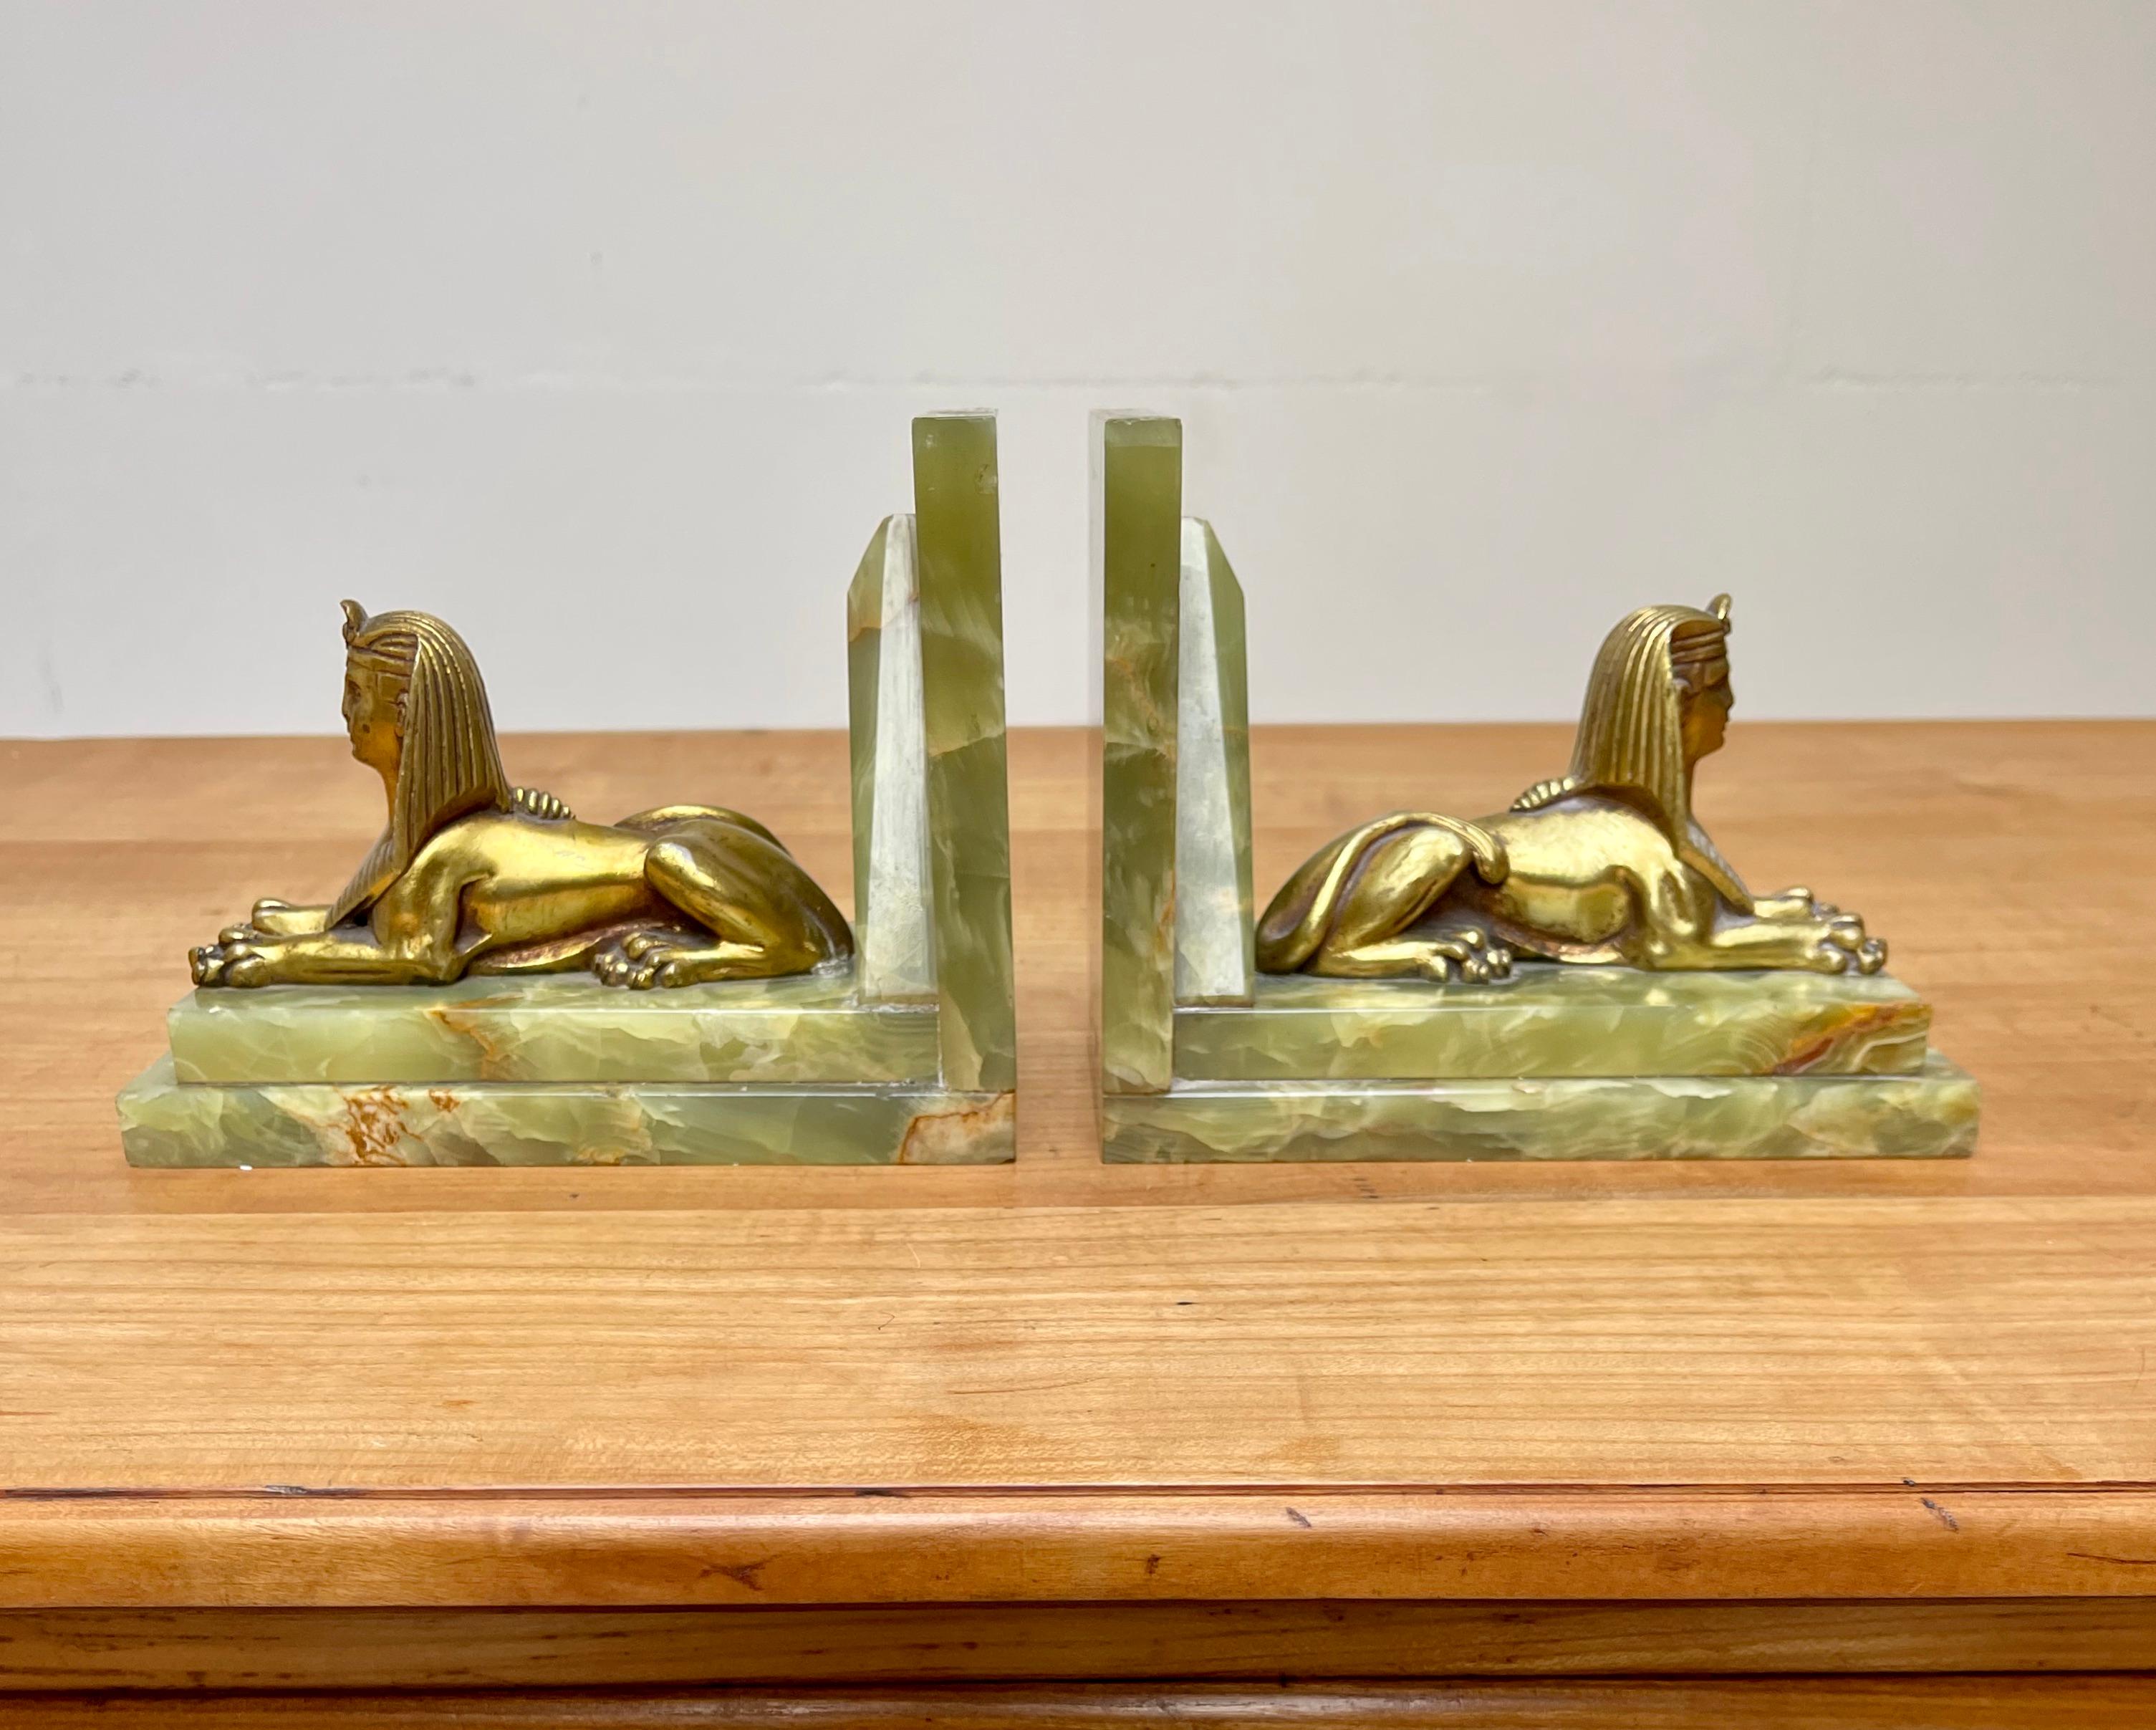 Belle paire de serre-livres en onyx vert avec des sculptures de sphinx égyptien.

Ces serre-livres en marbre onyx de taille pratique, très élégants et entièrement fabriqués à la main, sont accompagnés d'une paire de sphinx en bronze doré